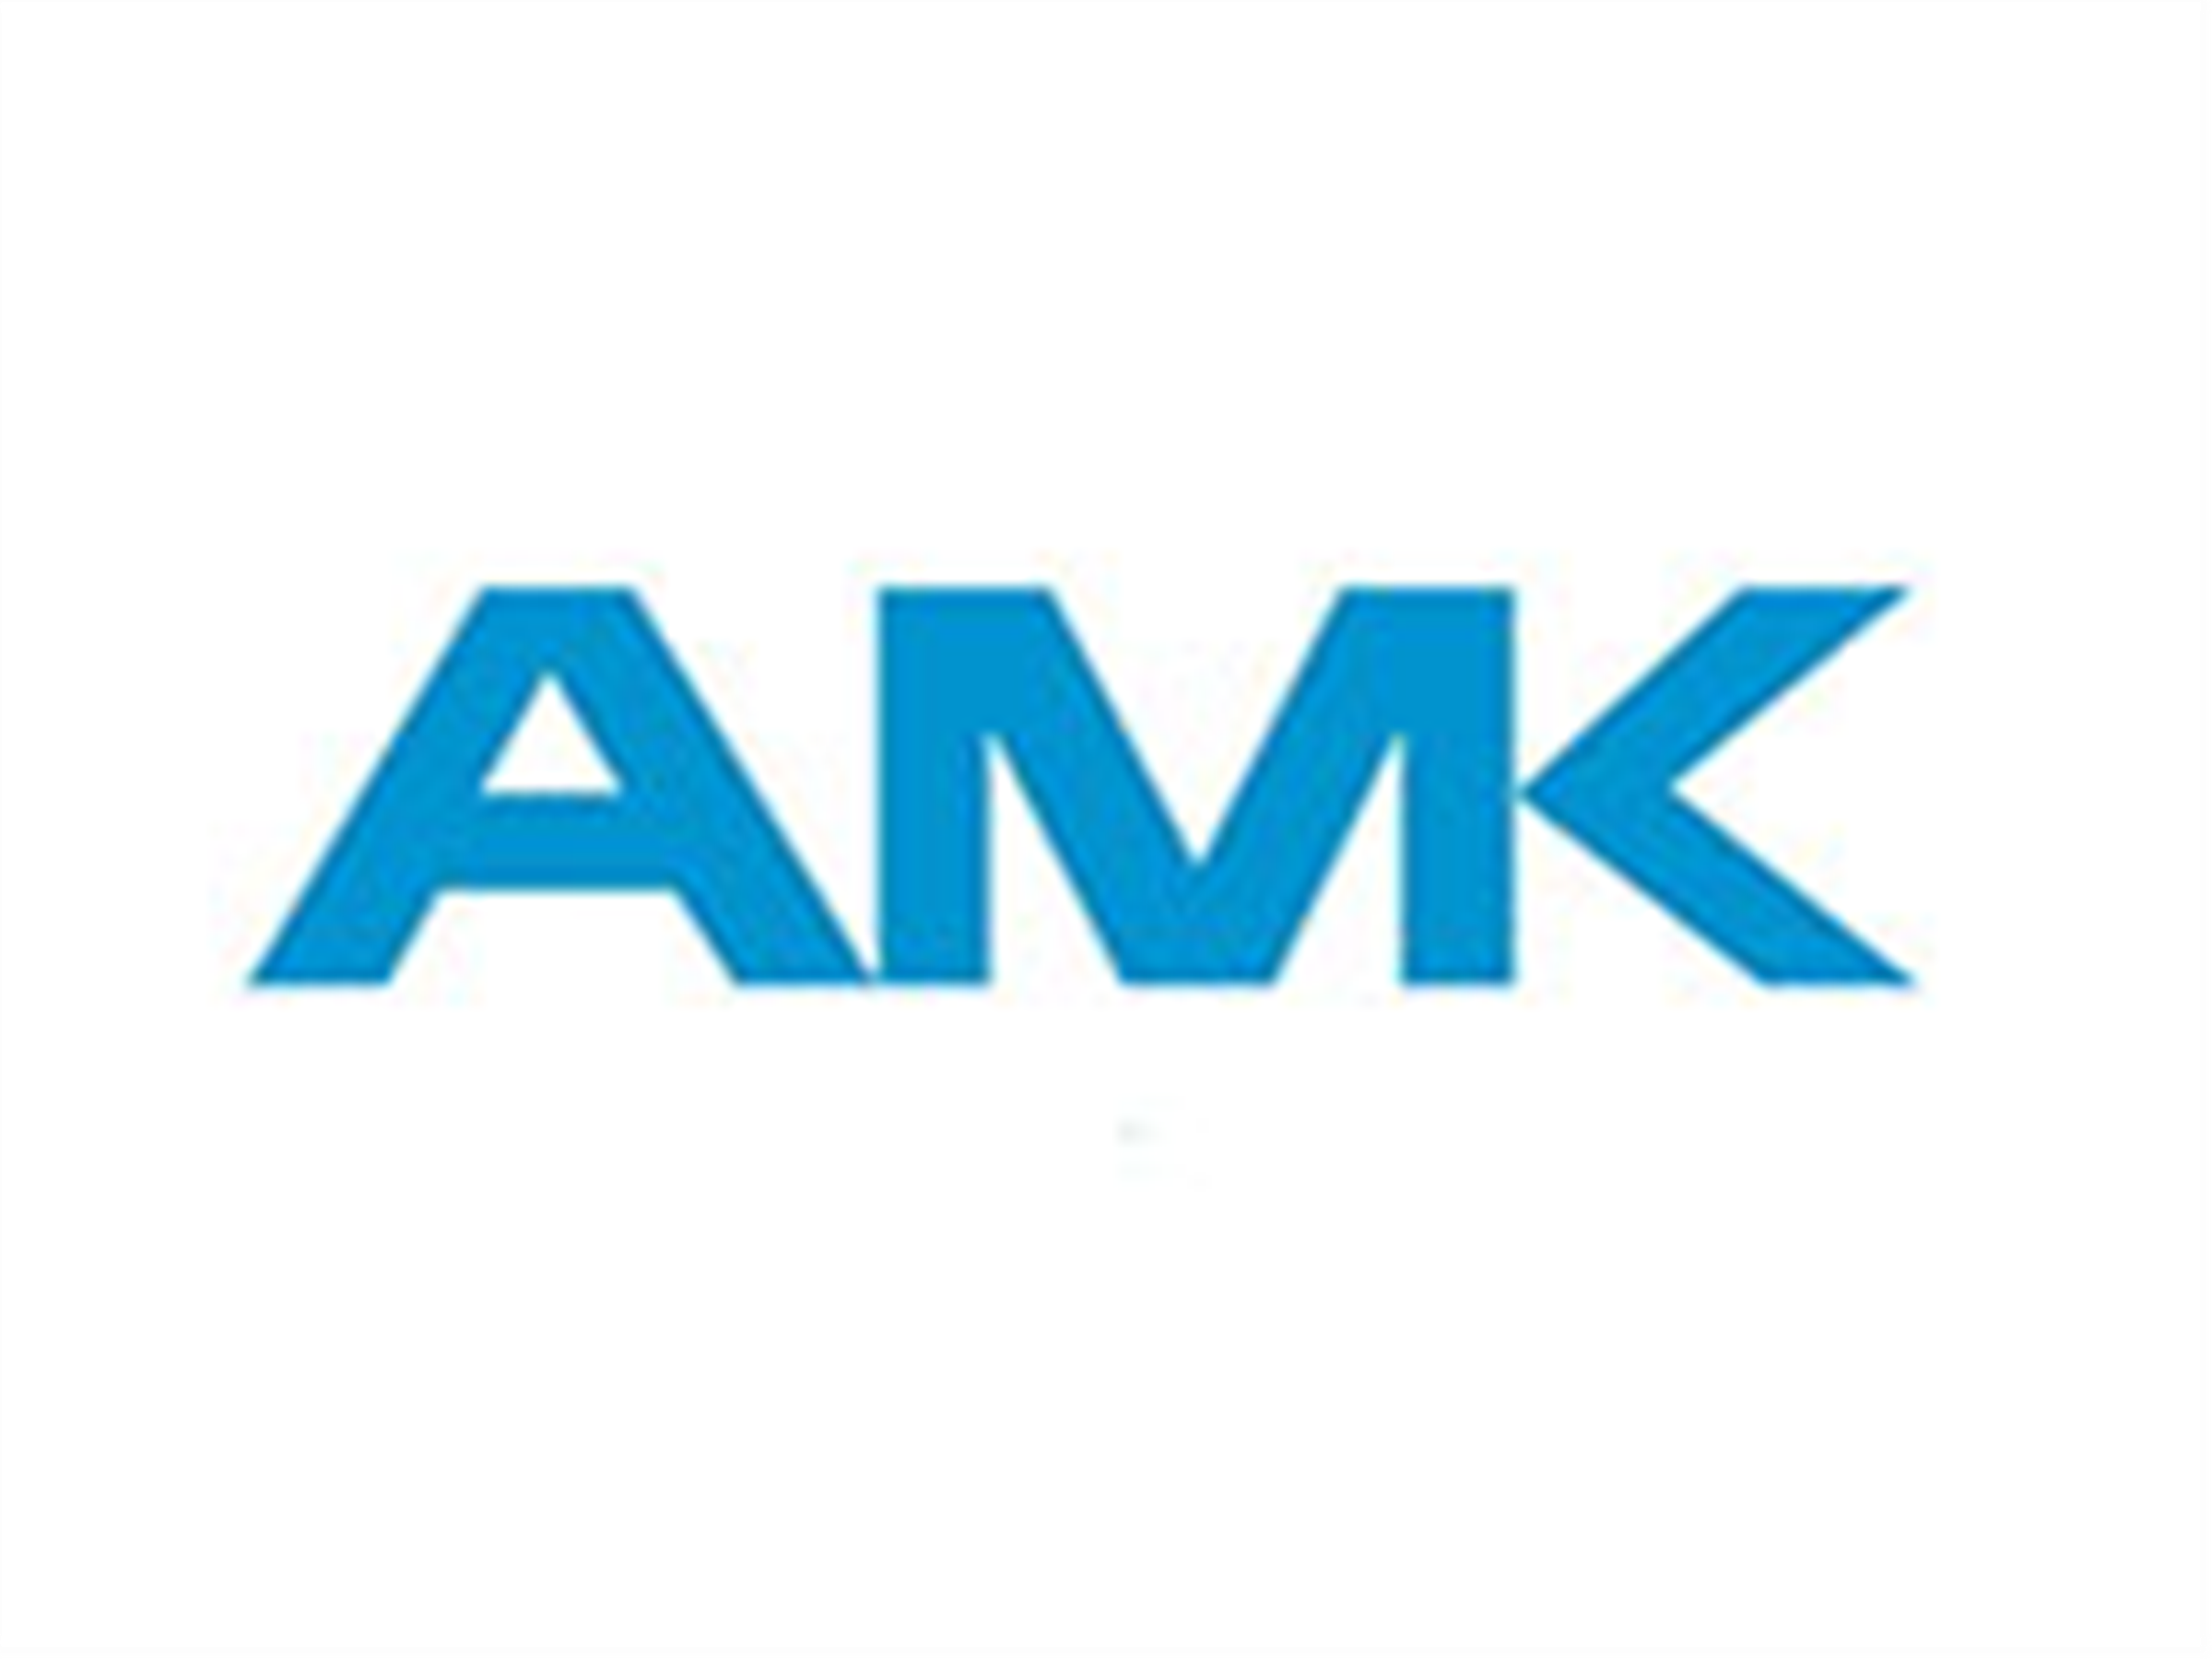 德国AMK电机